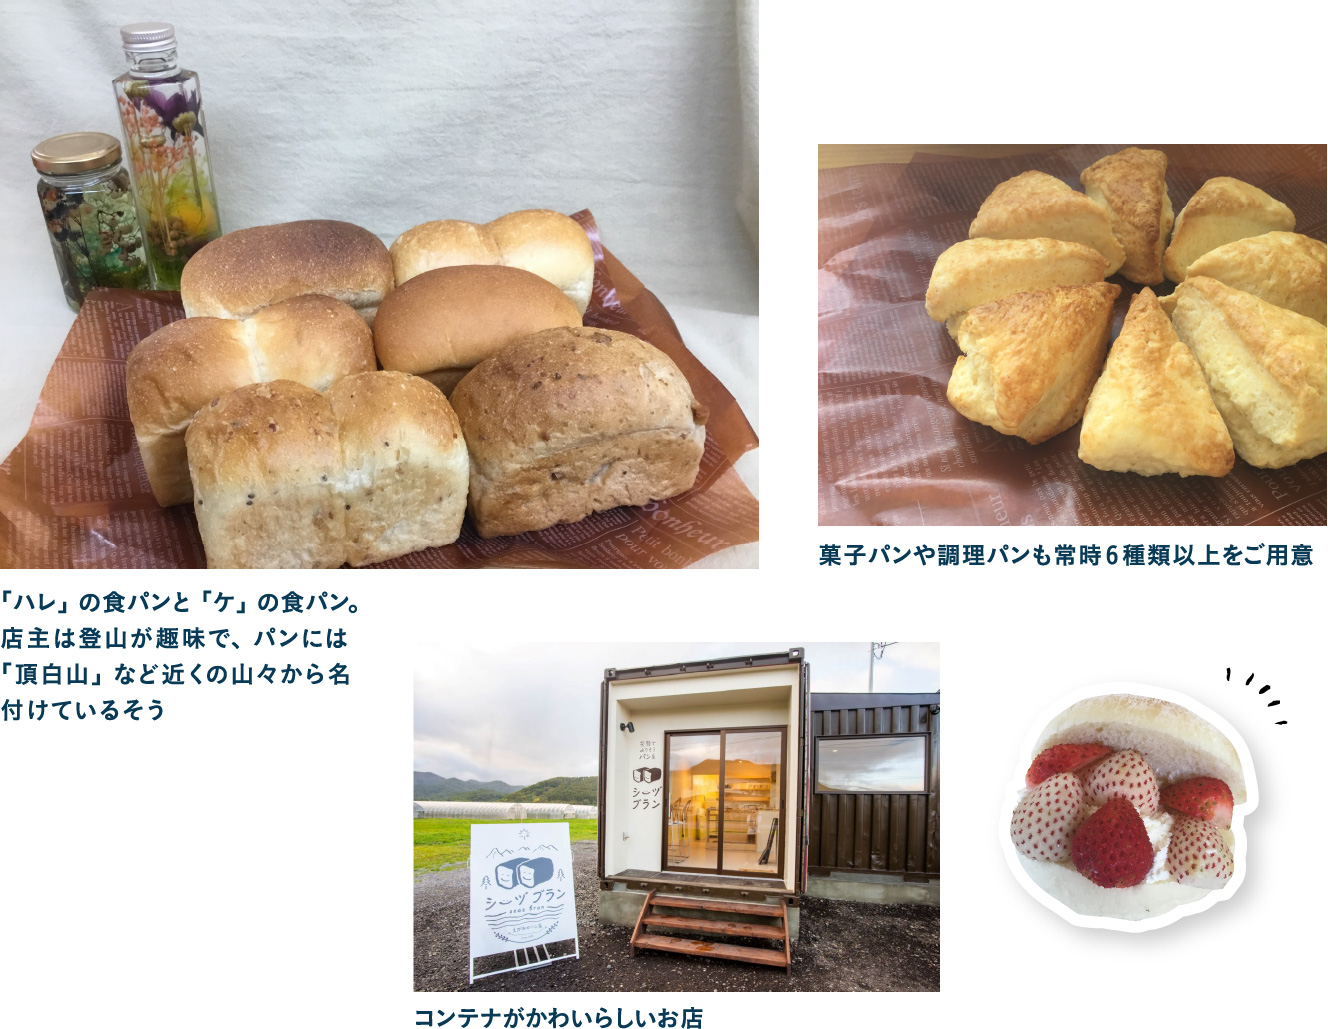 地元の人々に愛されるseaz bran仁木町産、道内産の素材にこだわったパンをお土産に